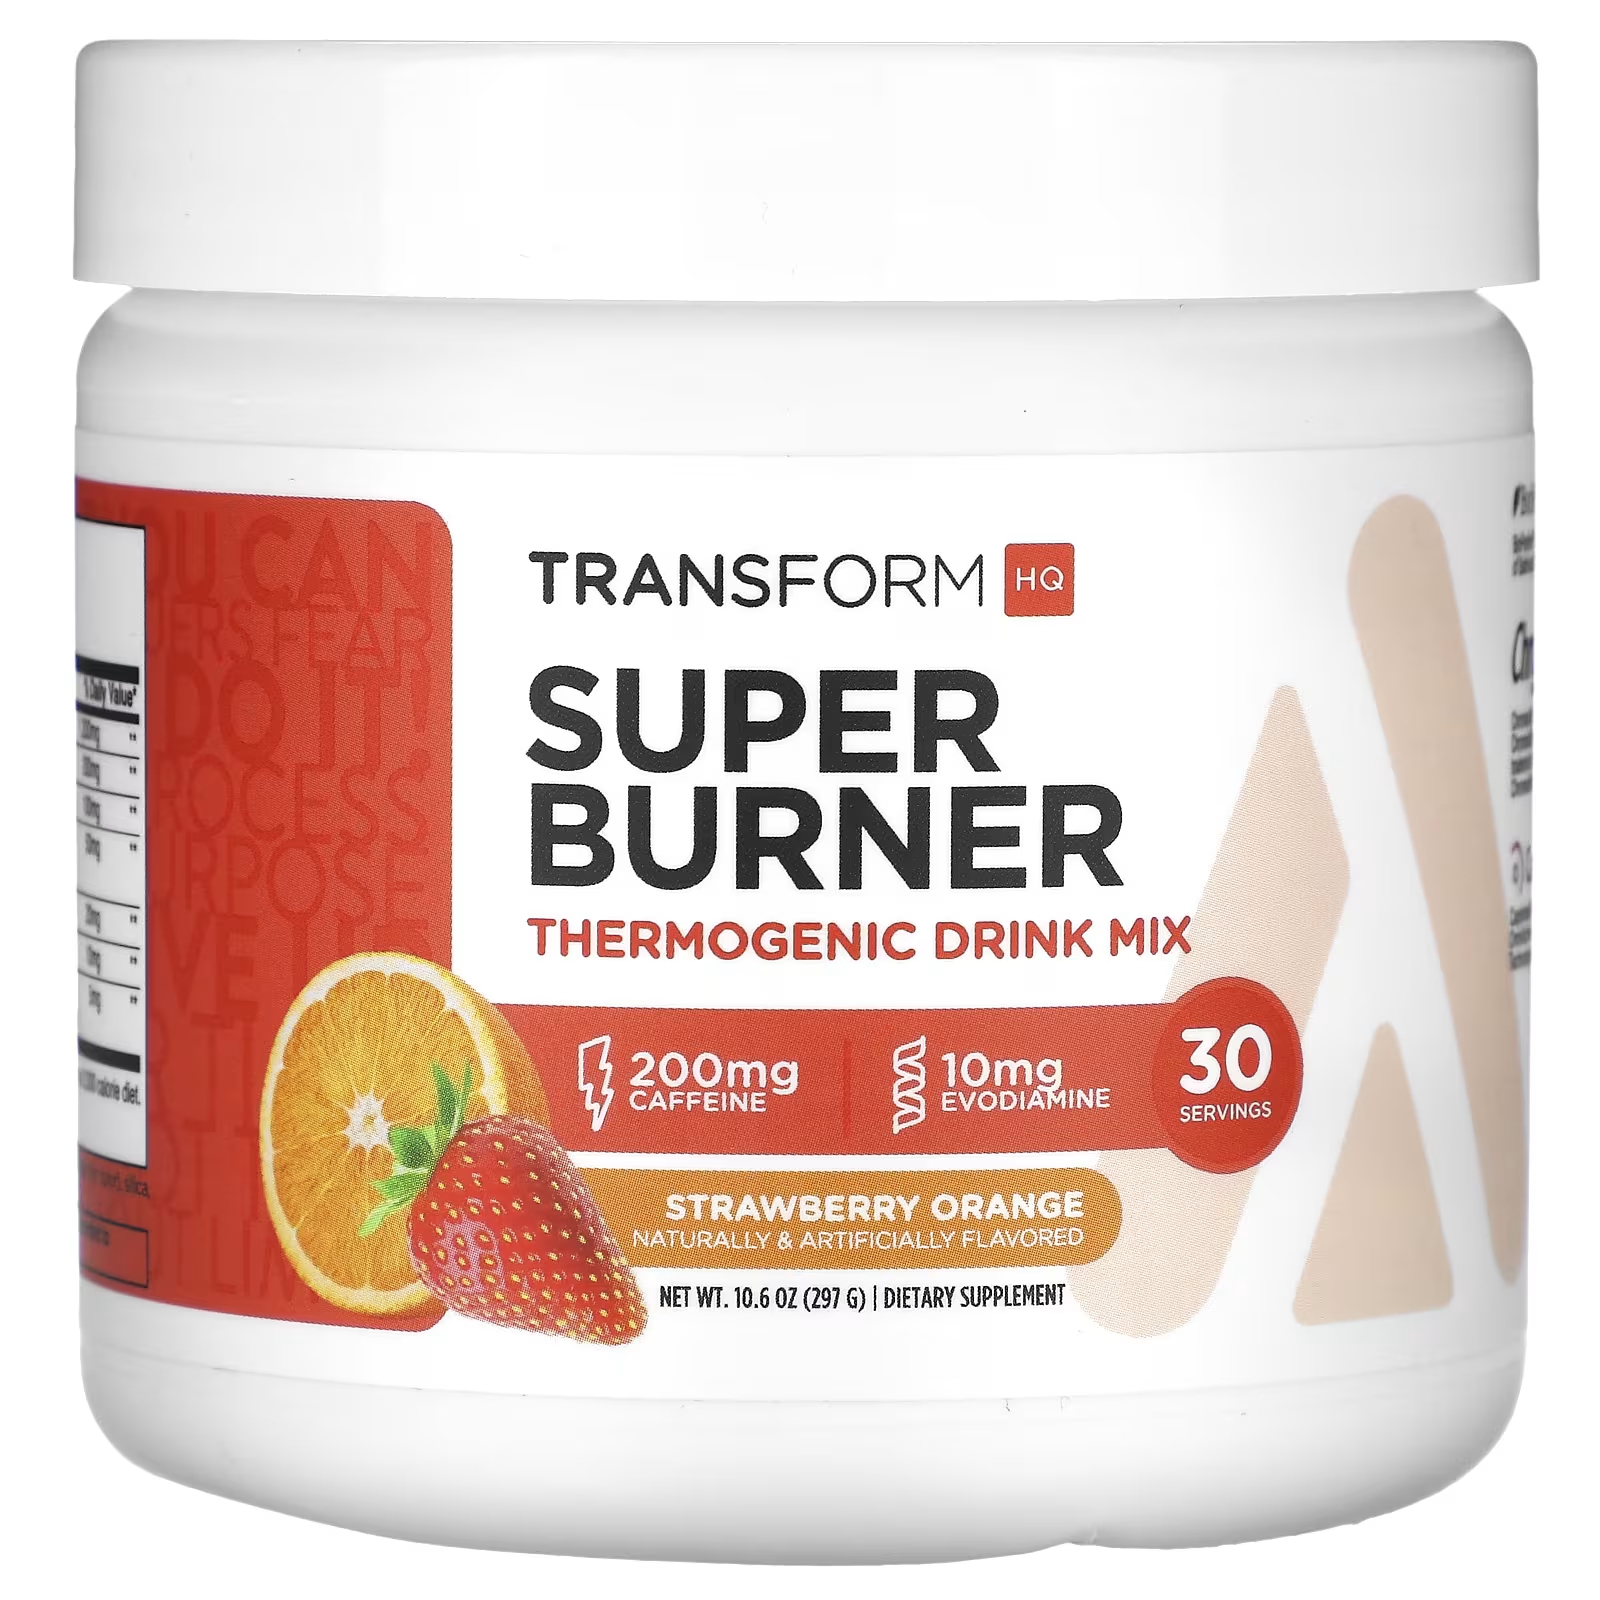 Смесь для термогенного напитка TransformHQ Super Burner клубника и апельсин, 297 г